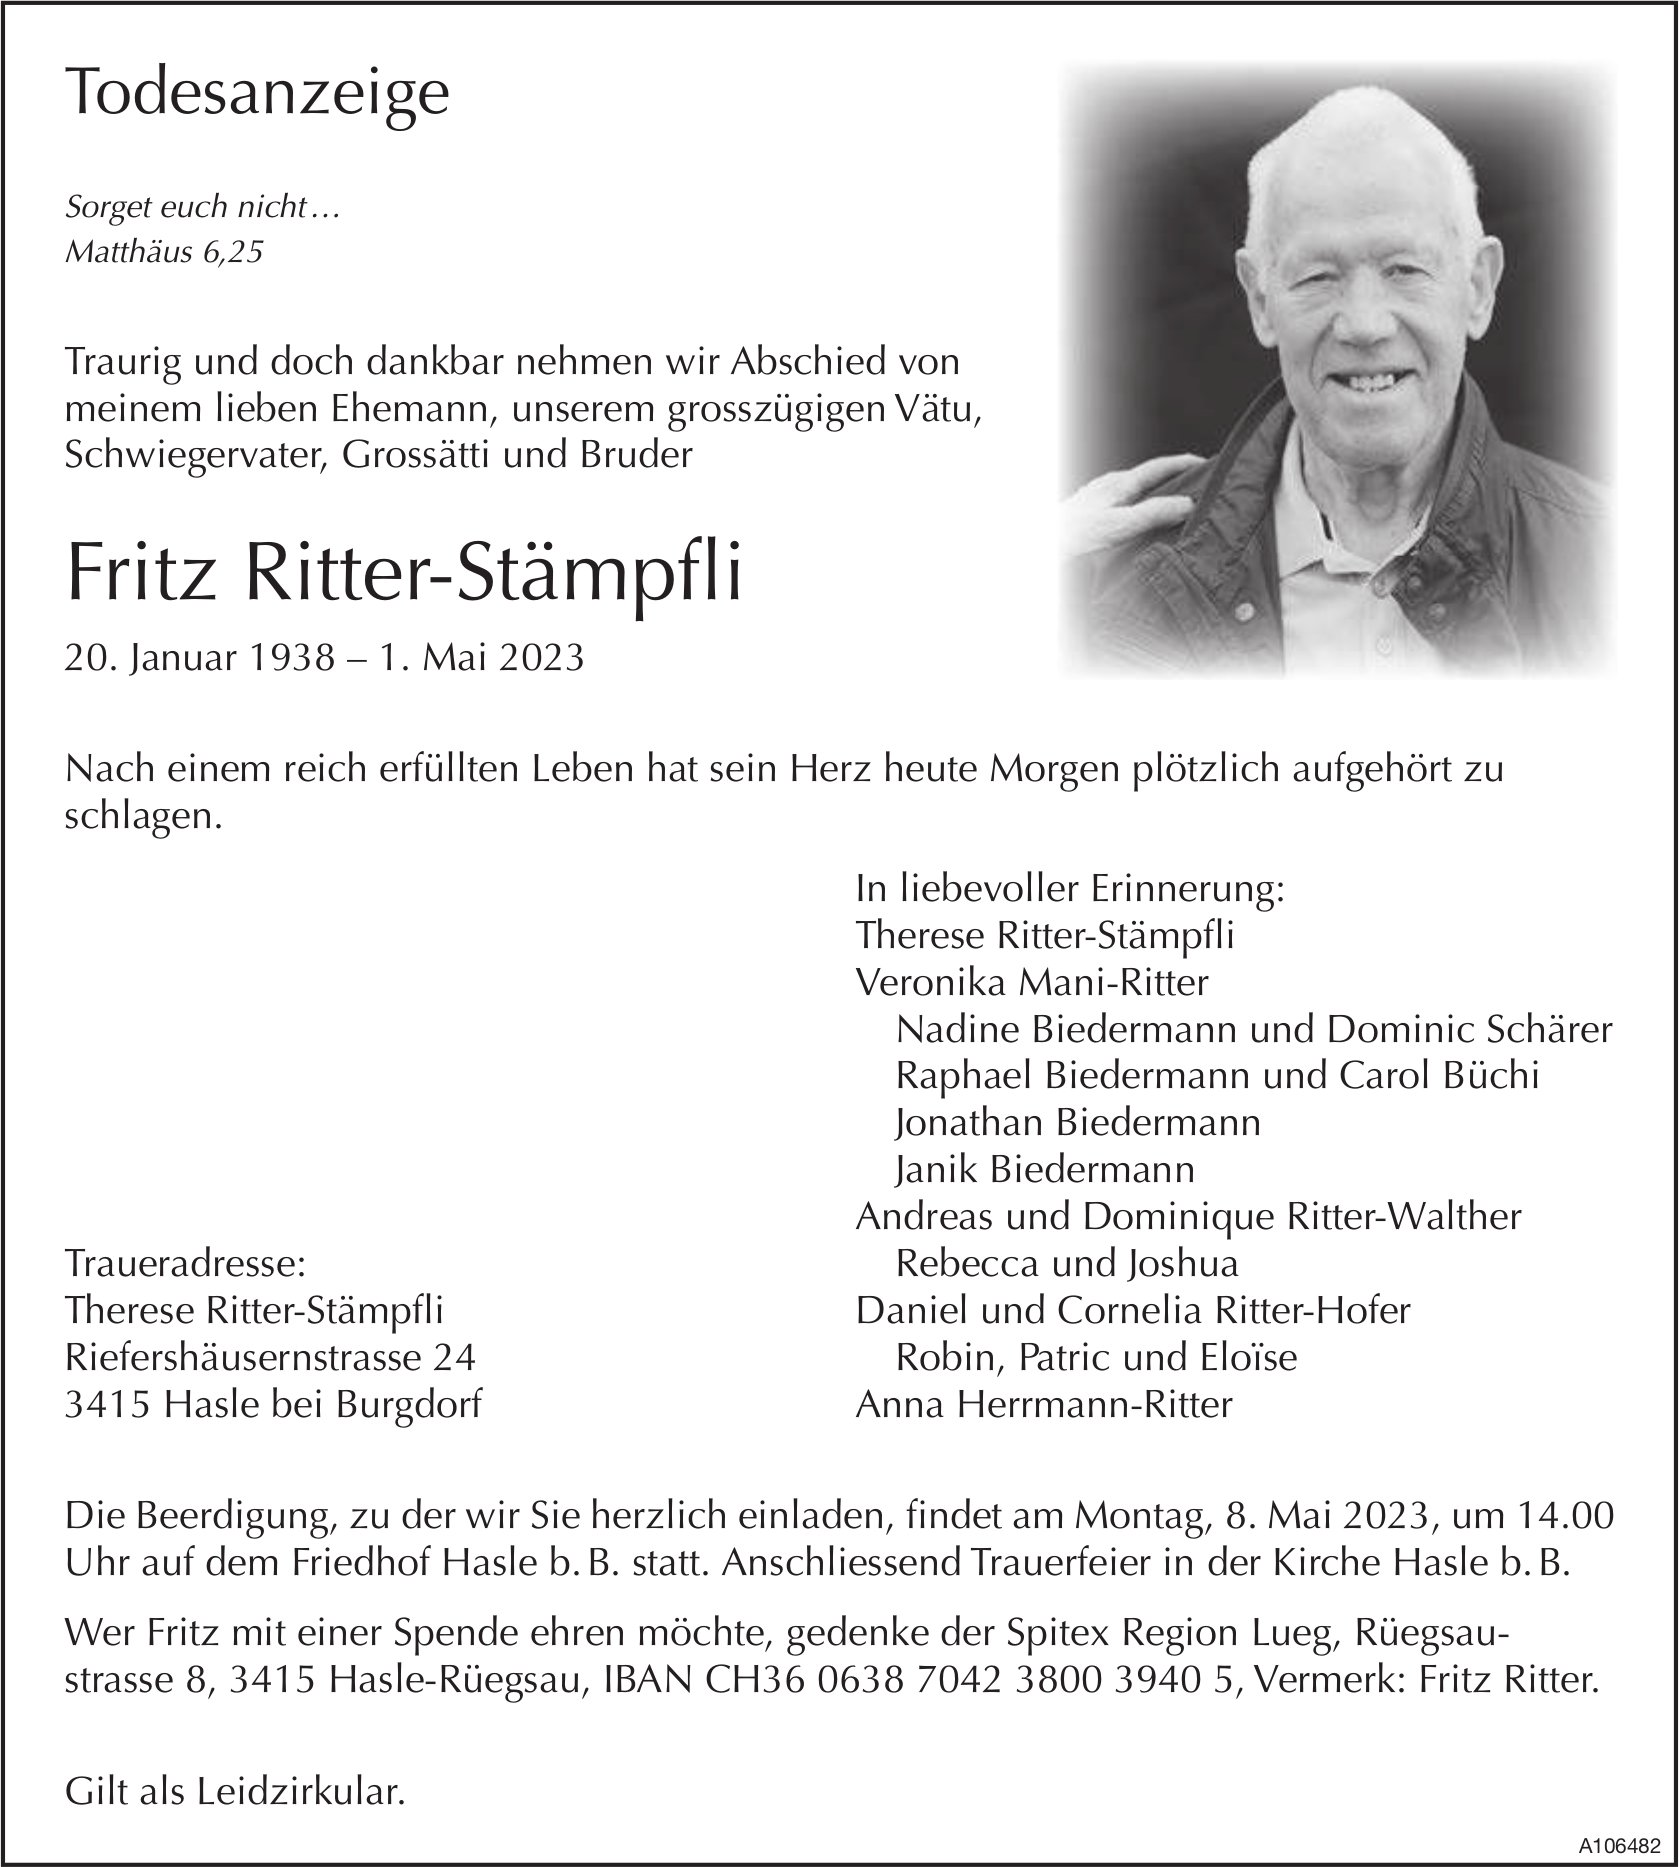 Fritz Ritter-Stämpfli, Mai 2023 / TA